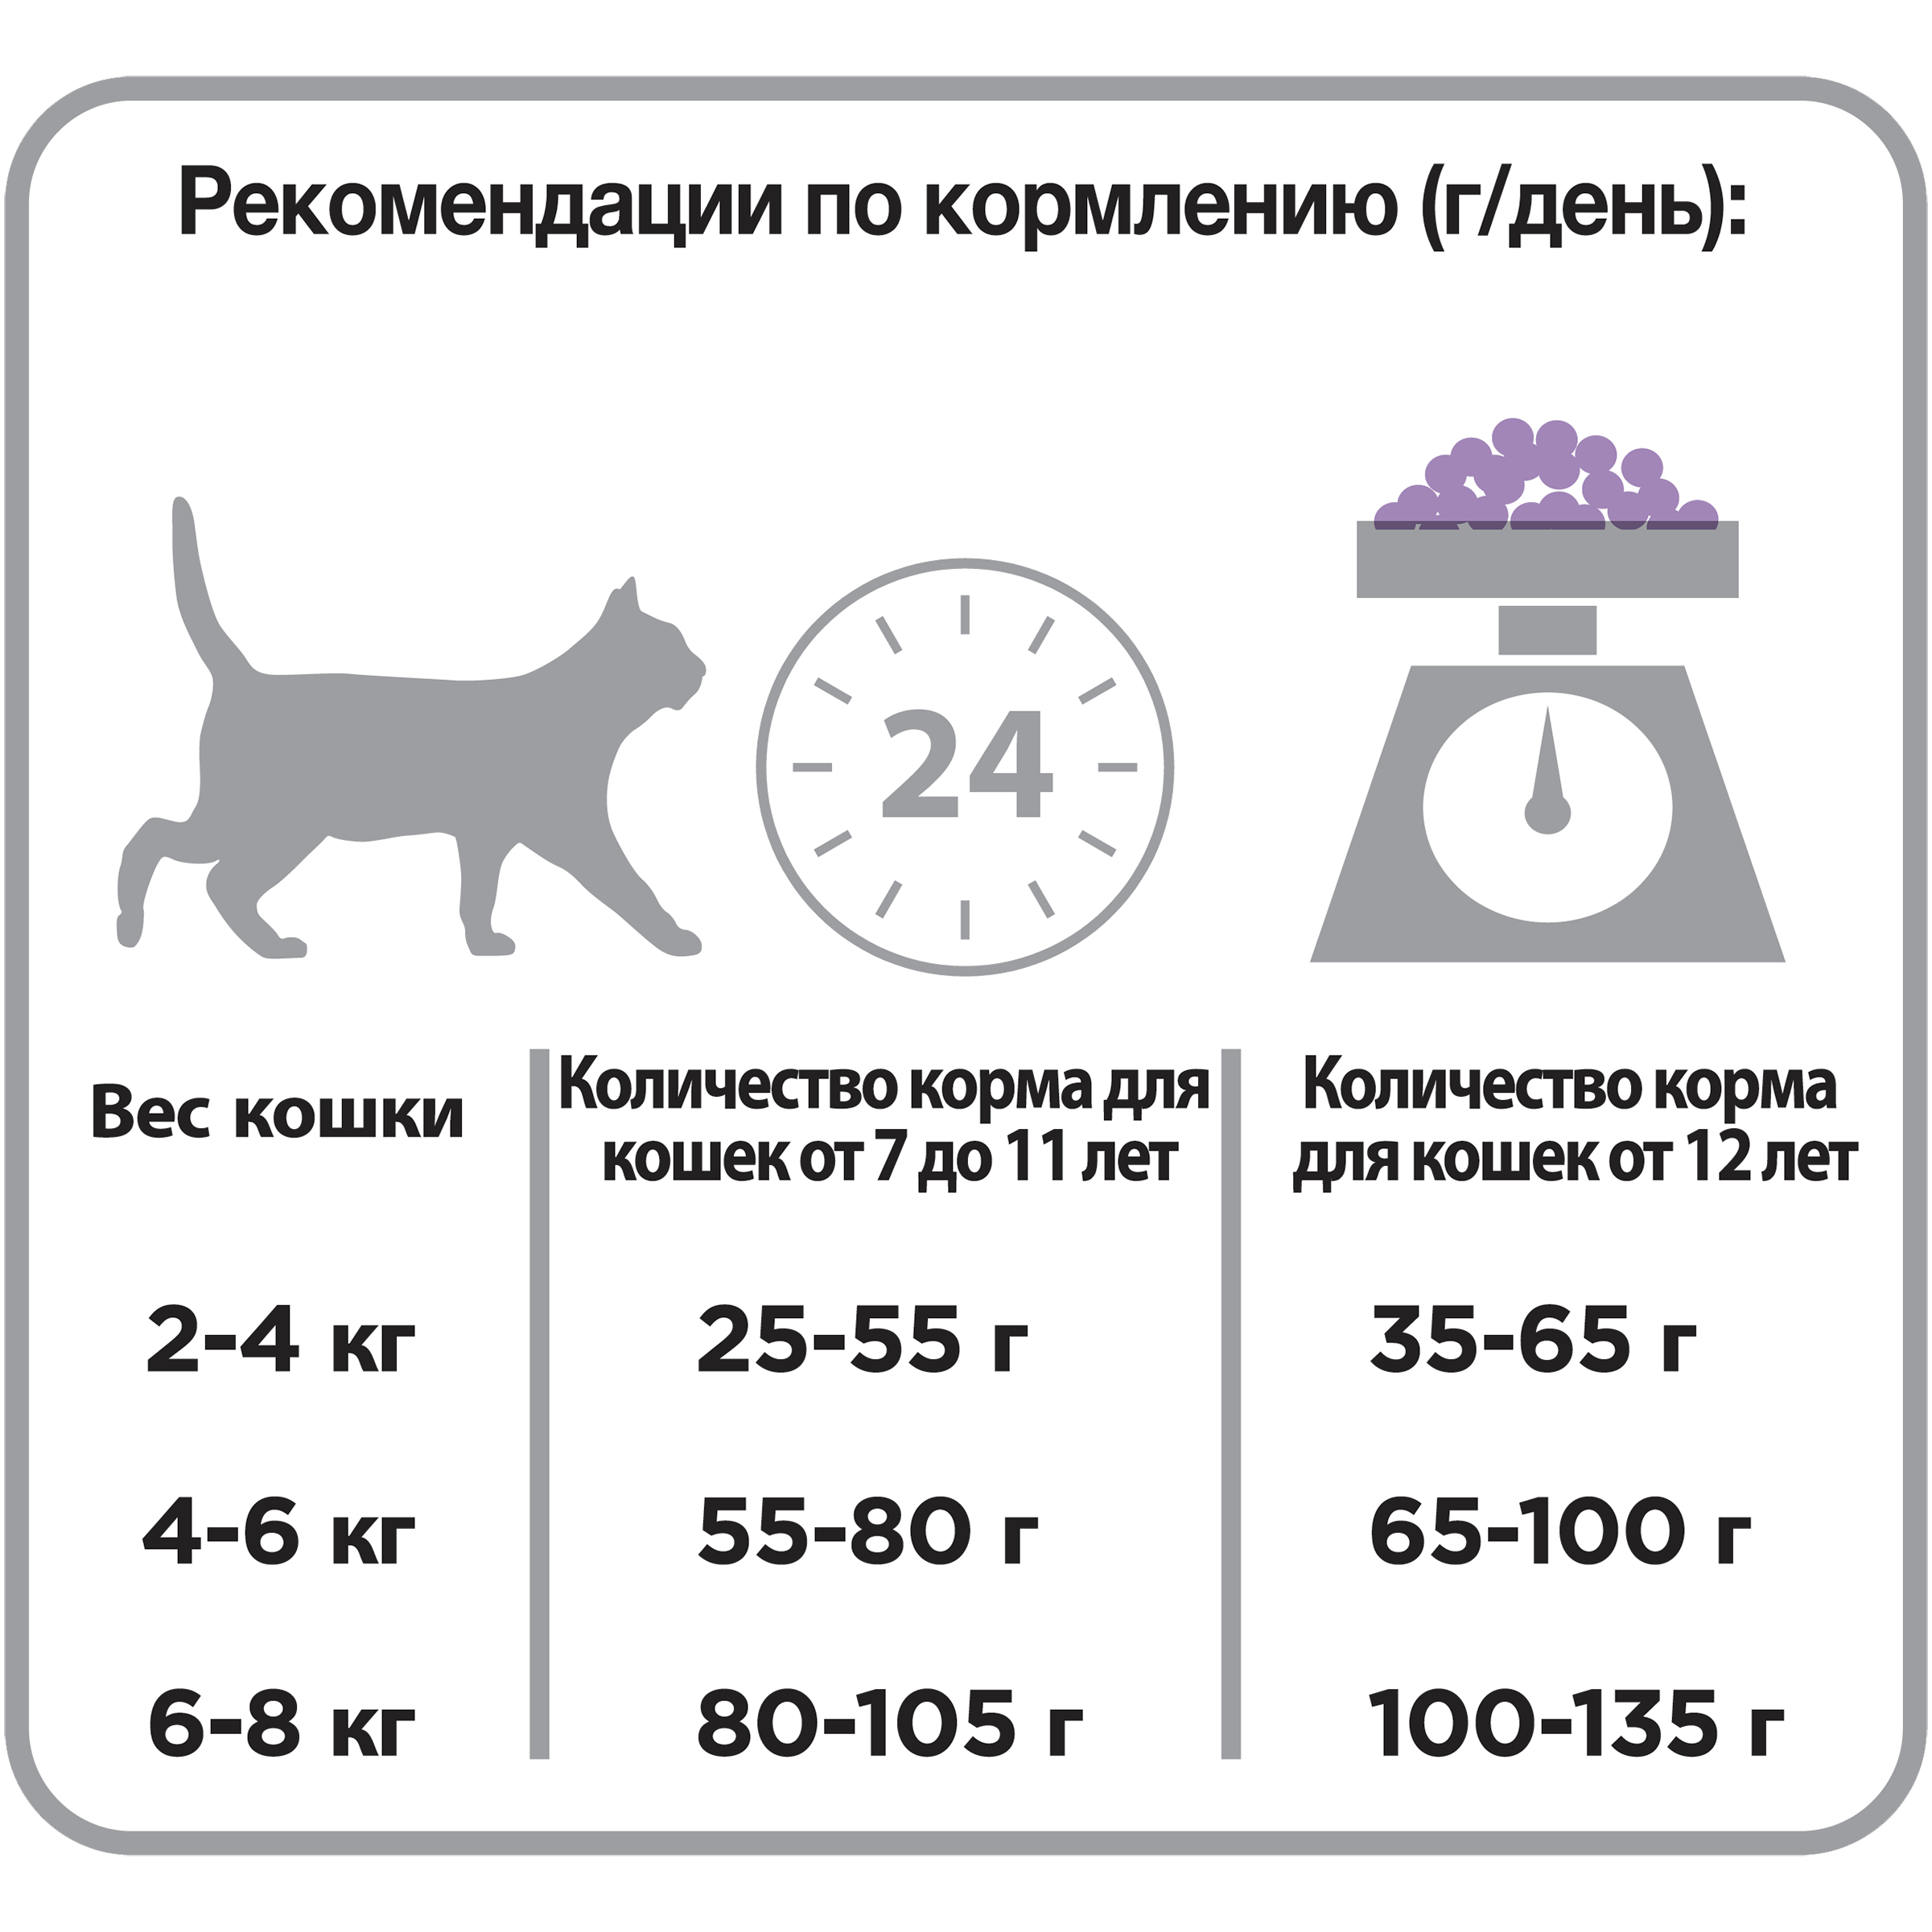 Суточная норма корма для кошек - картинки и фото koshka.top